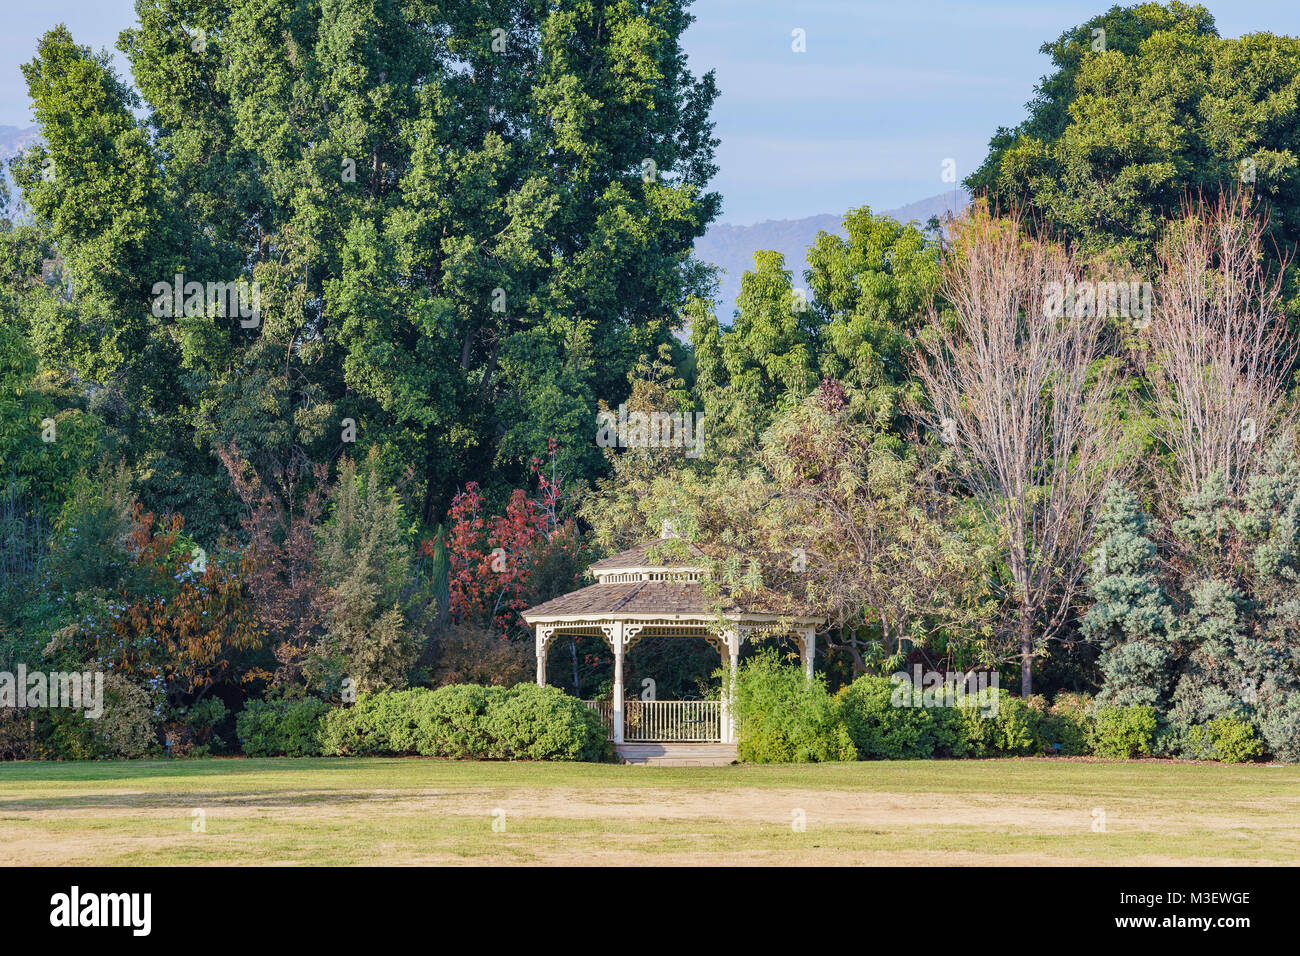 Sentier nature sur une journée ensoleillée à Los Angeles County Arboretum & Botanic Garden Banque D'Images